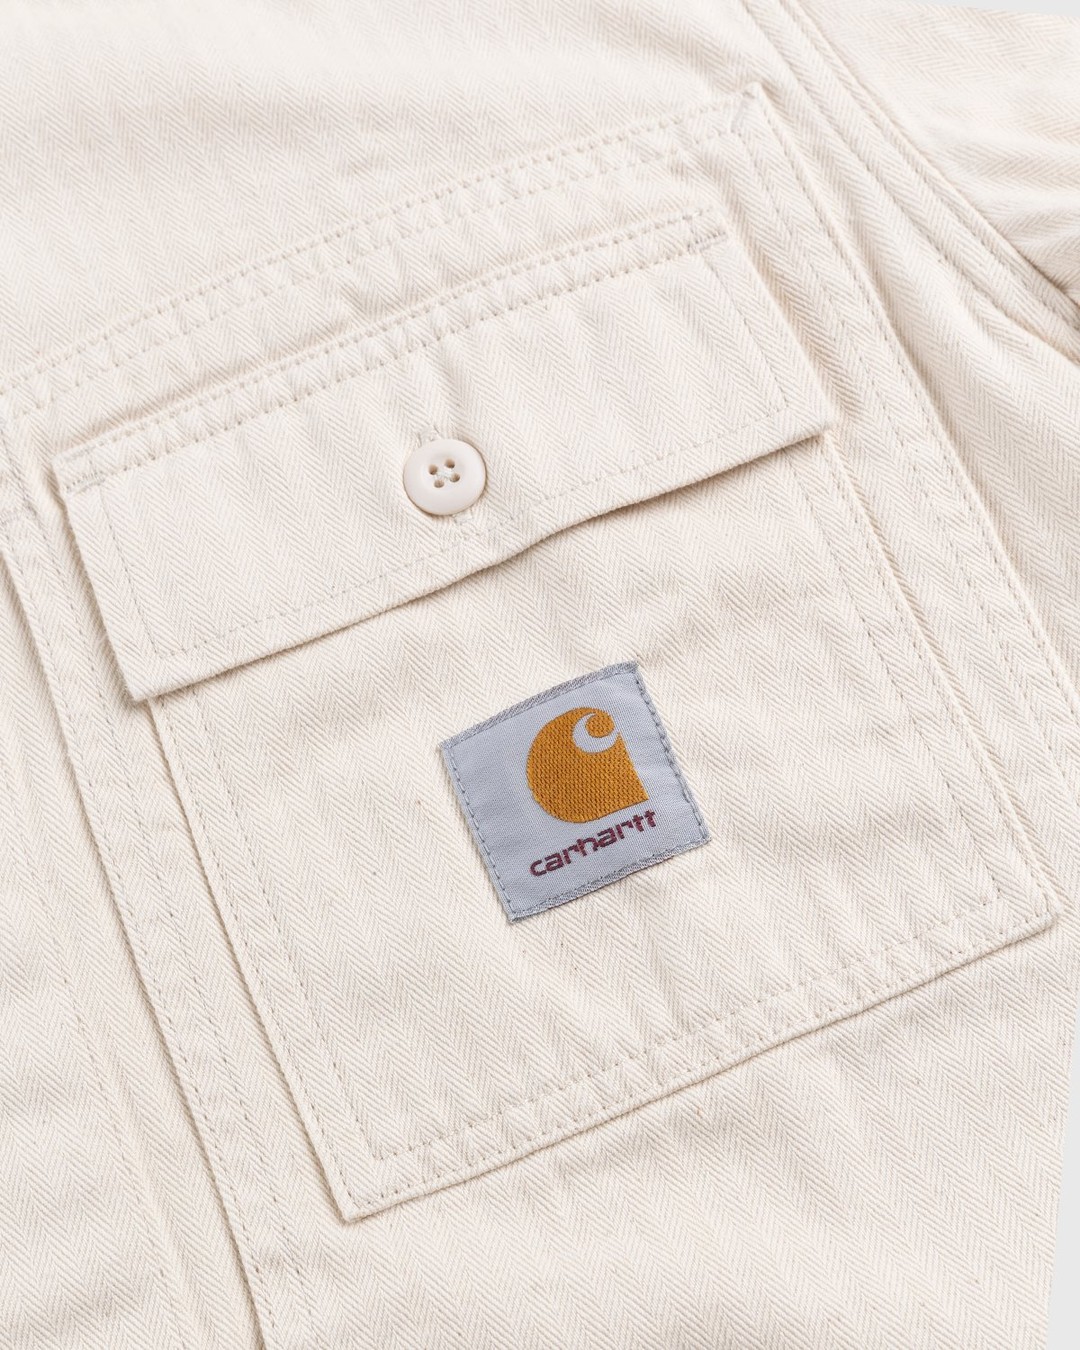 Carhartt WIP – Charter Shirt Natural - Longsleeve Shirts - Beige - Image 5